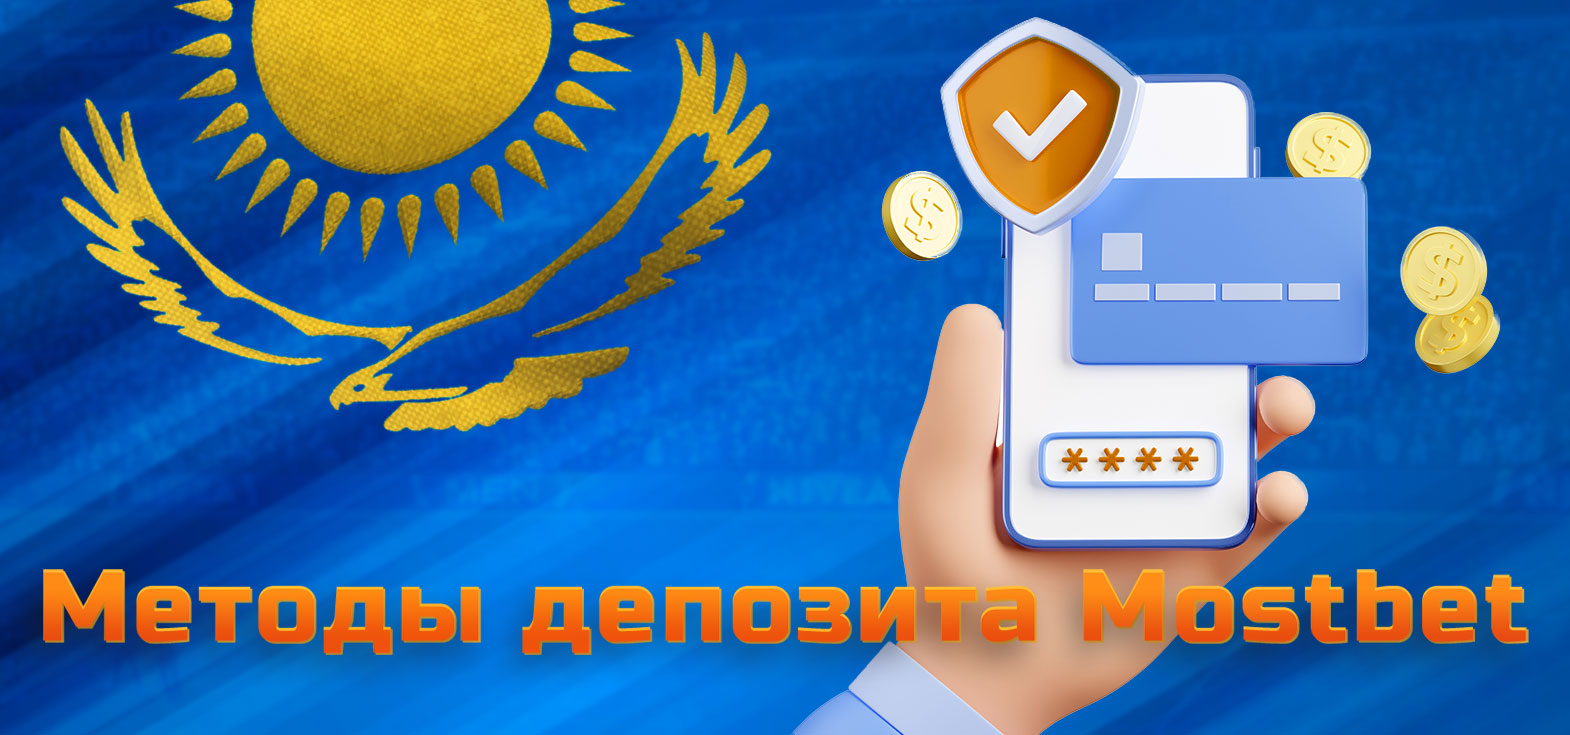 Все доступные методы пополнения средств, доступные на платформе Mostbet для игроков из Казахстана.